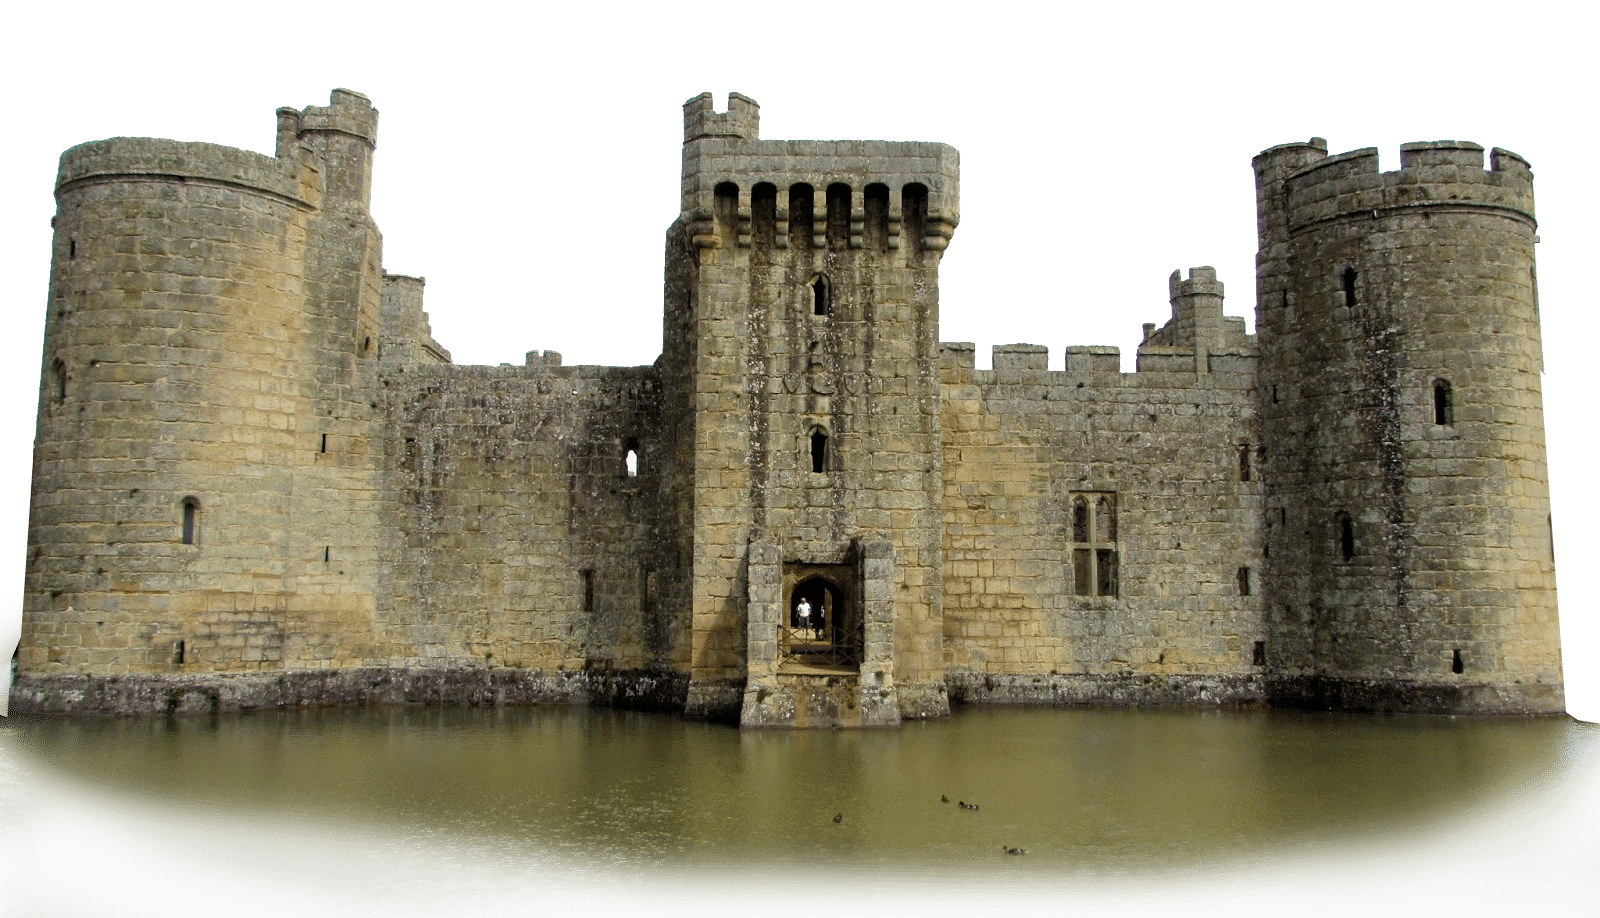 Les châteaux forts au Moyen-Age